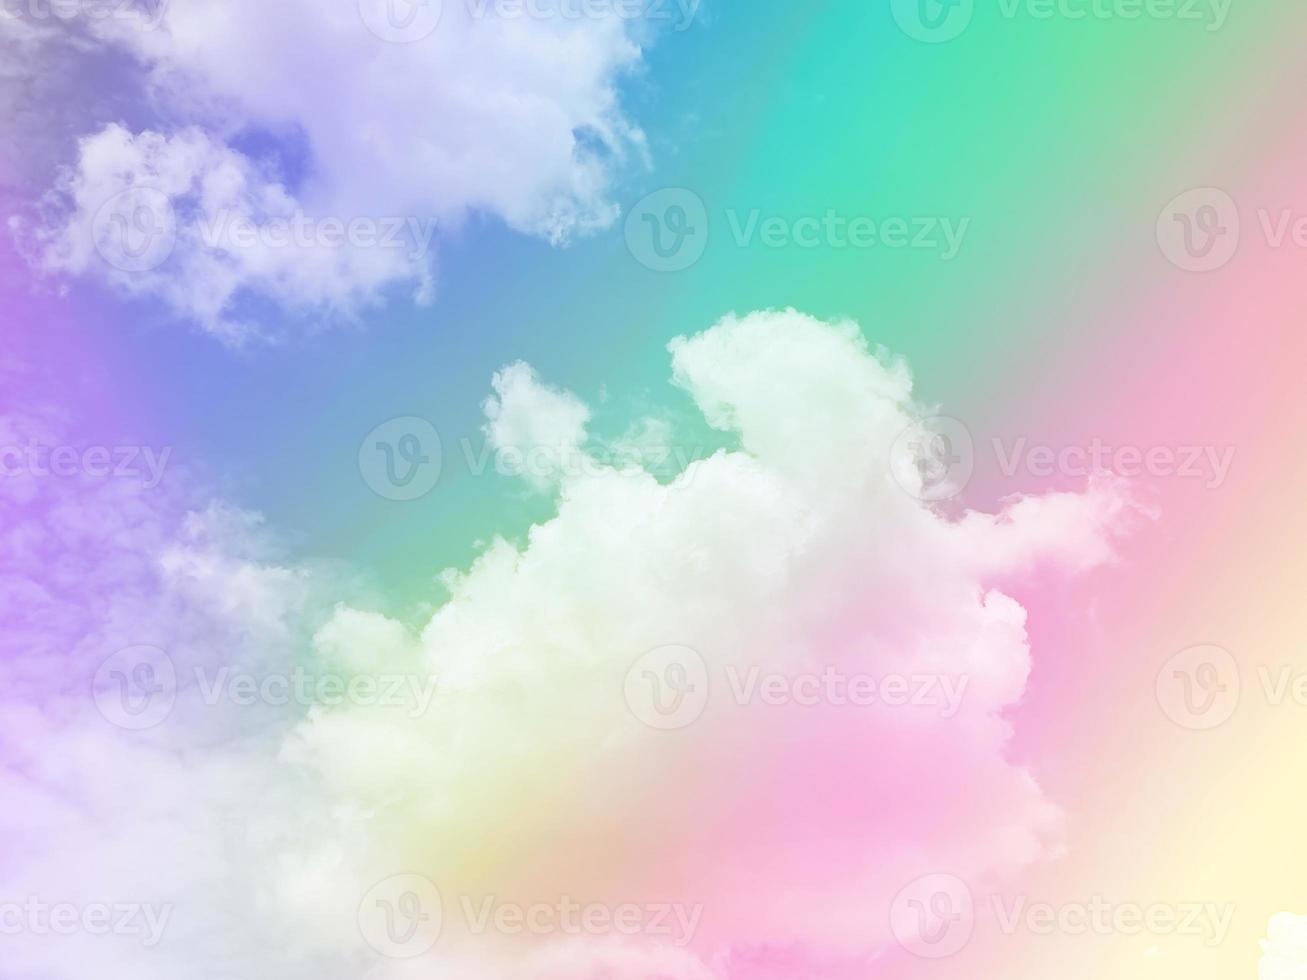 schönheit süß pastellgrün violett bunt mit flauschigen wolken am himmel. mehrfarbiges Regenbogenbild. abstrakte Fantasie wachsendes Licht foto